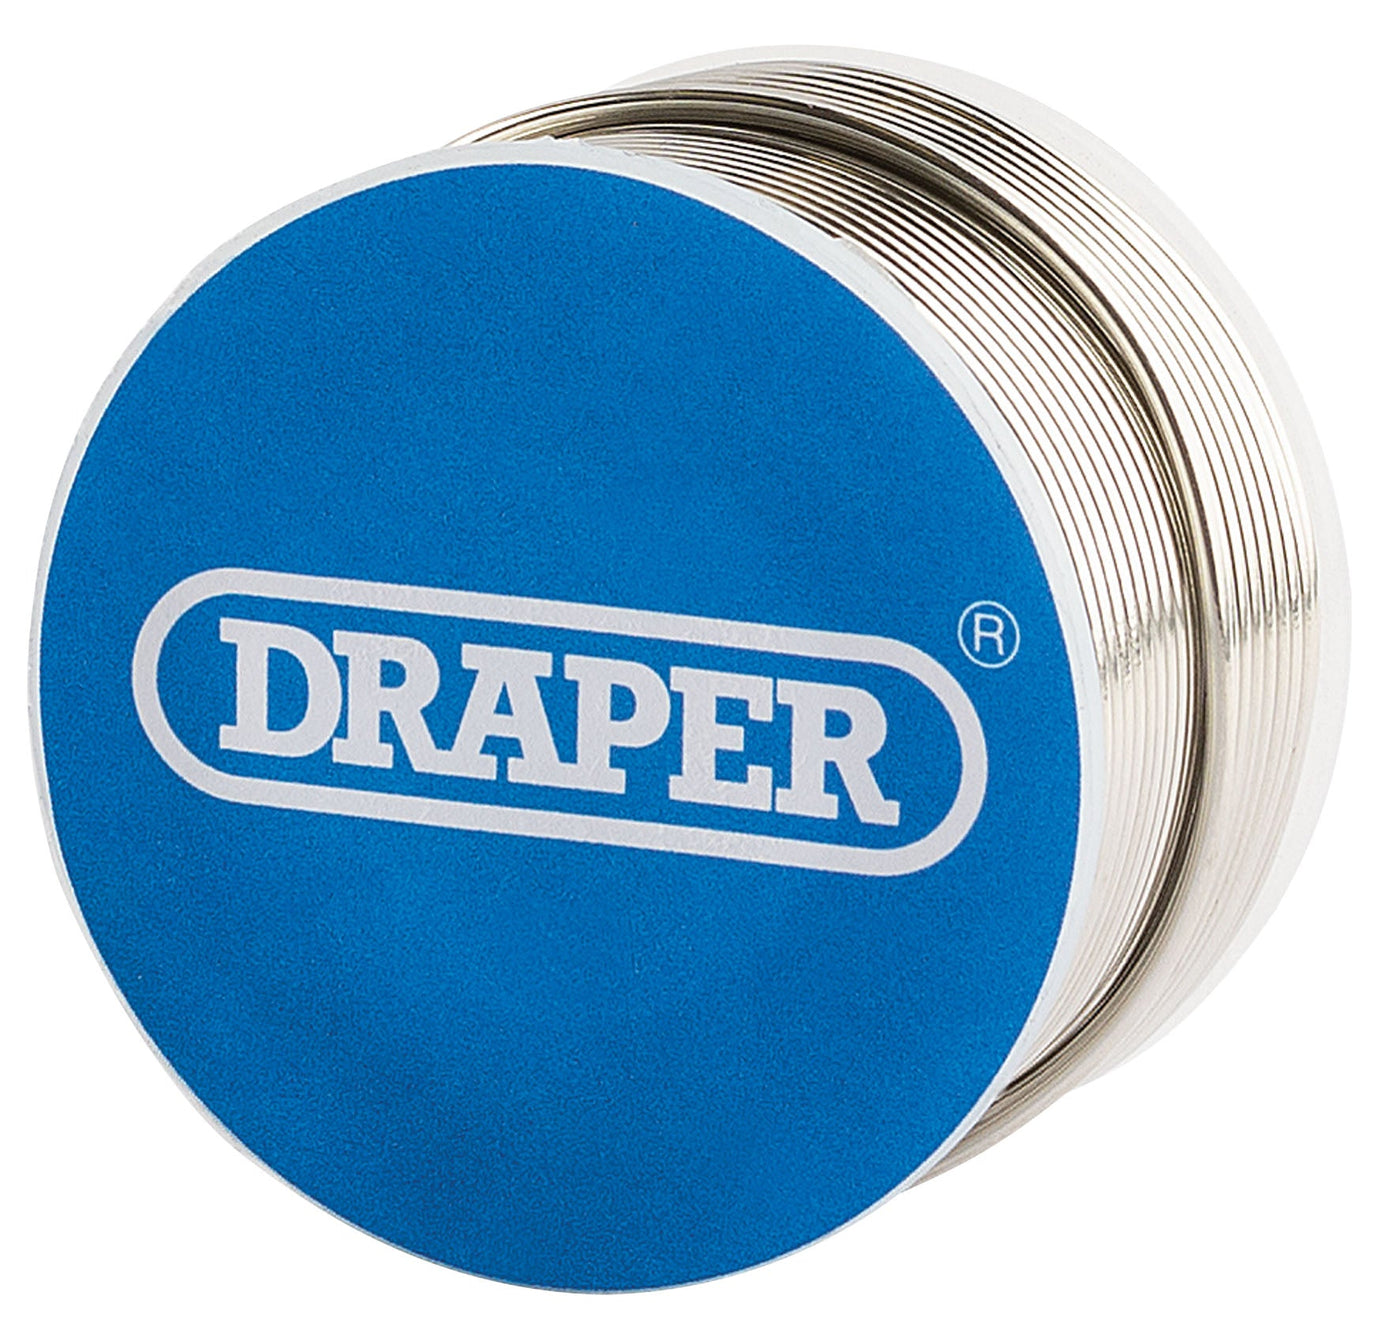 Draper 97993 100G Reel of 1.2mm Lead Free Flux Cored Solder